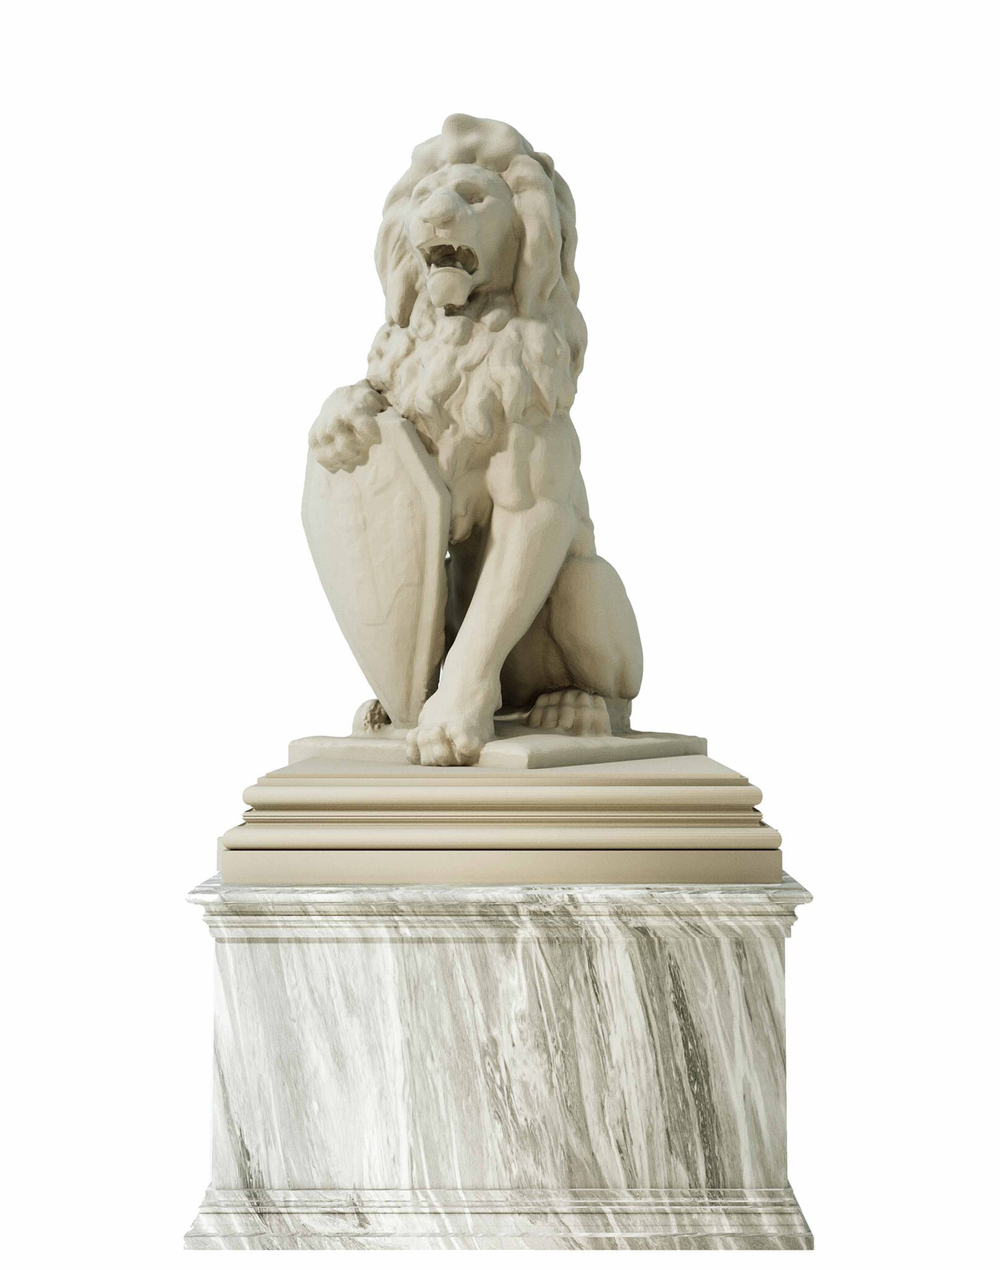 Статуя Льва со щитом высотой 70 см.